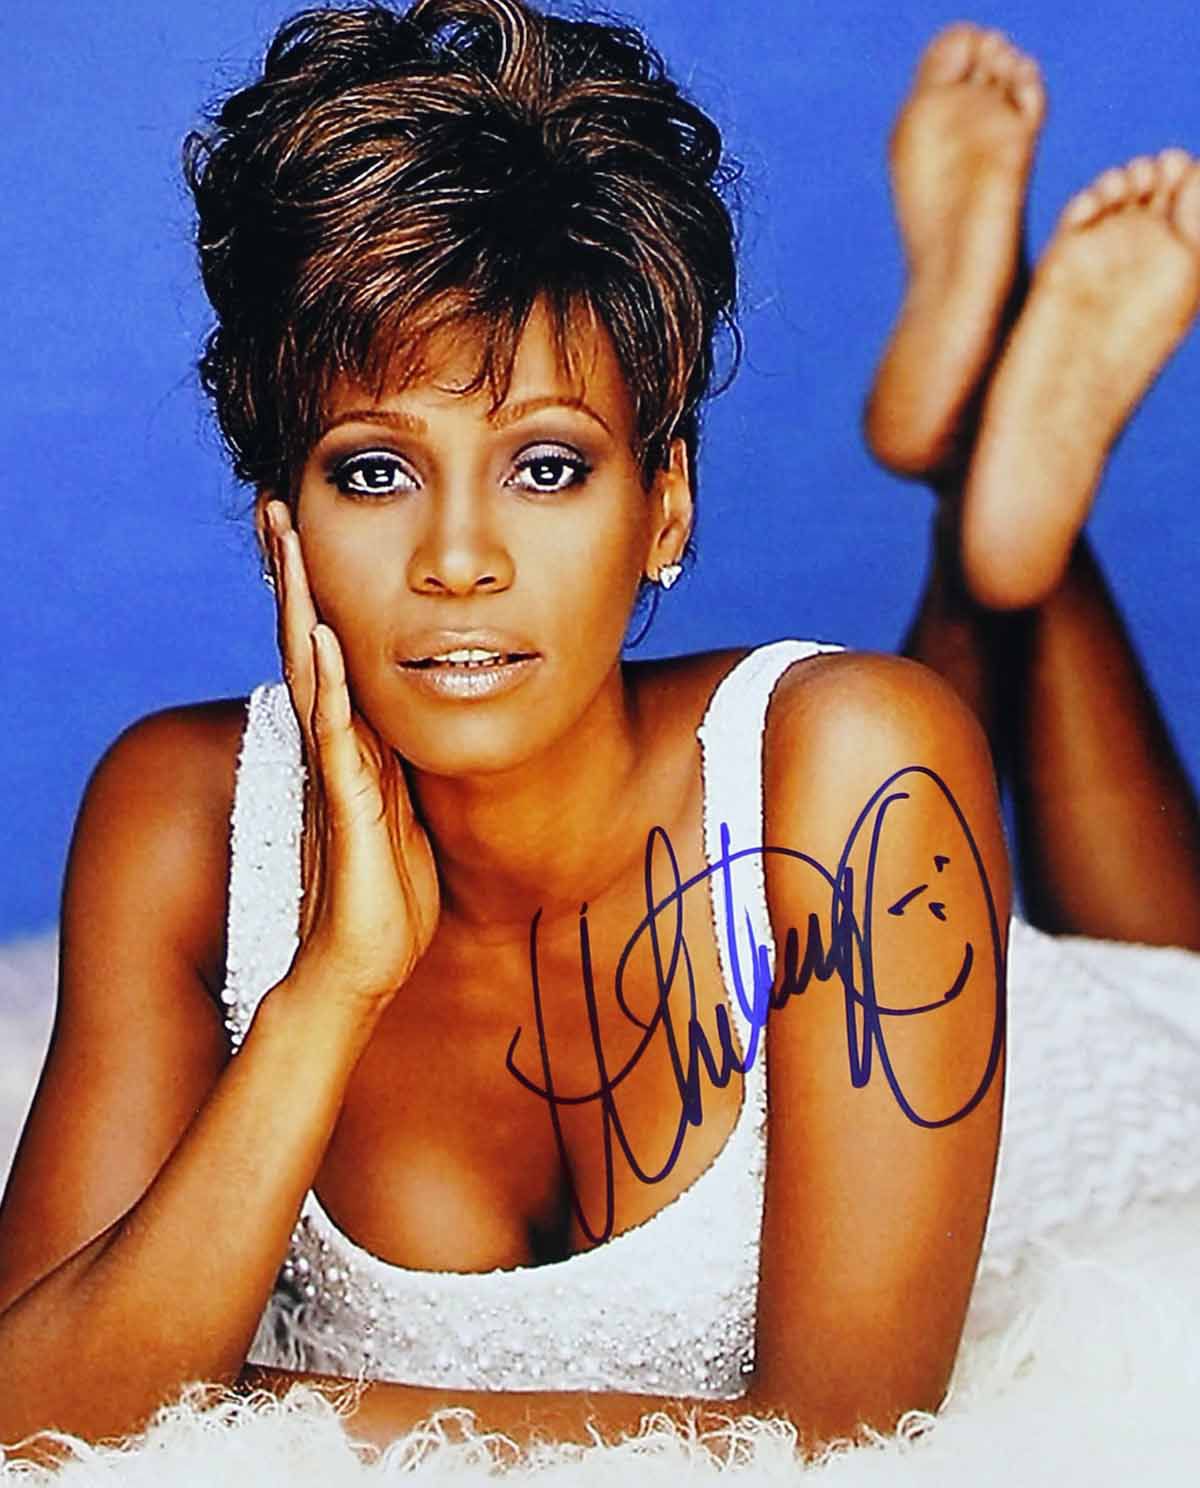 Whitney Houston legendary singer Reprint Signed 8x10" Photo RP #1 